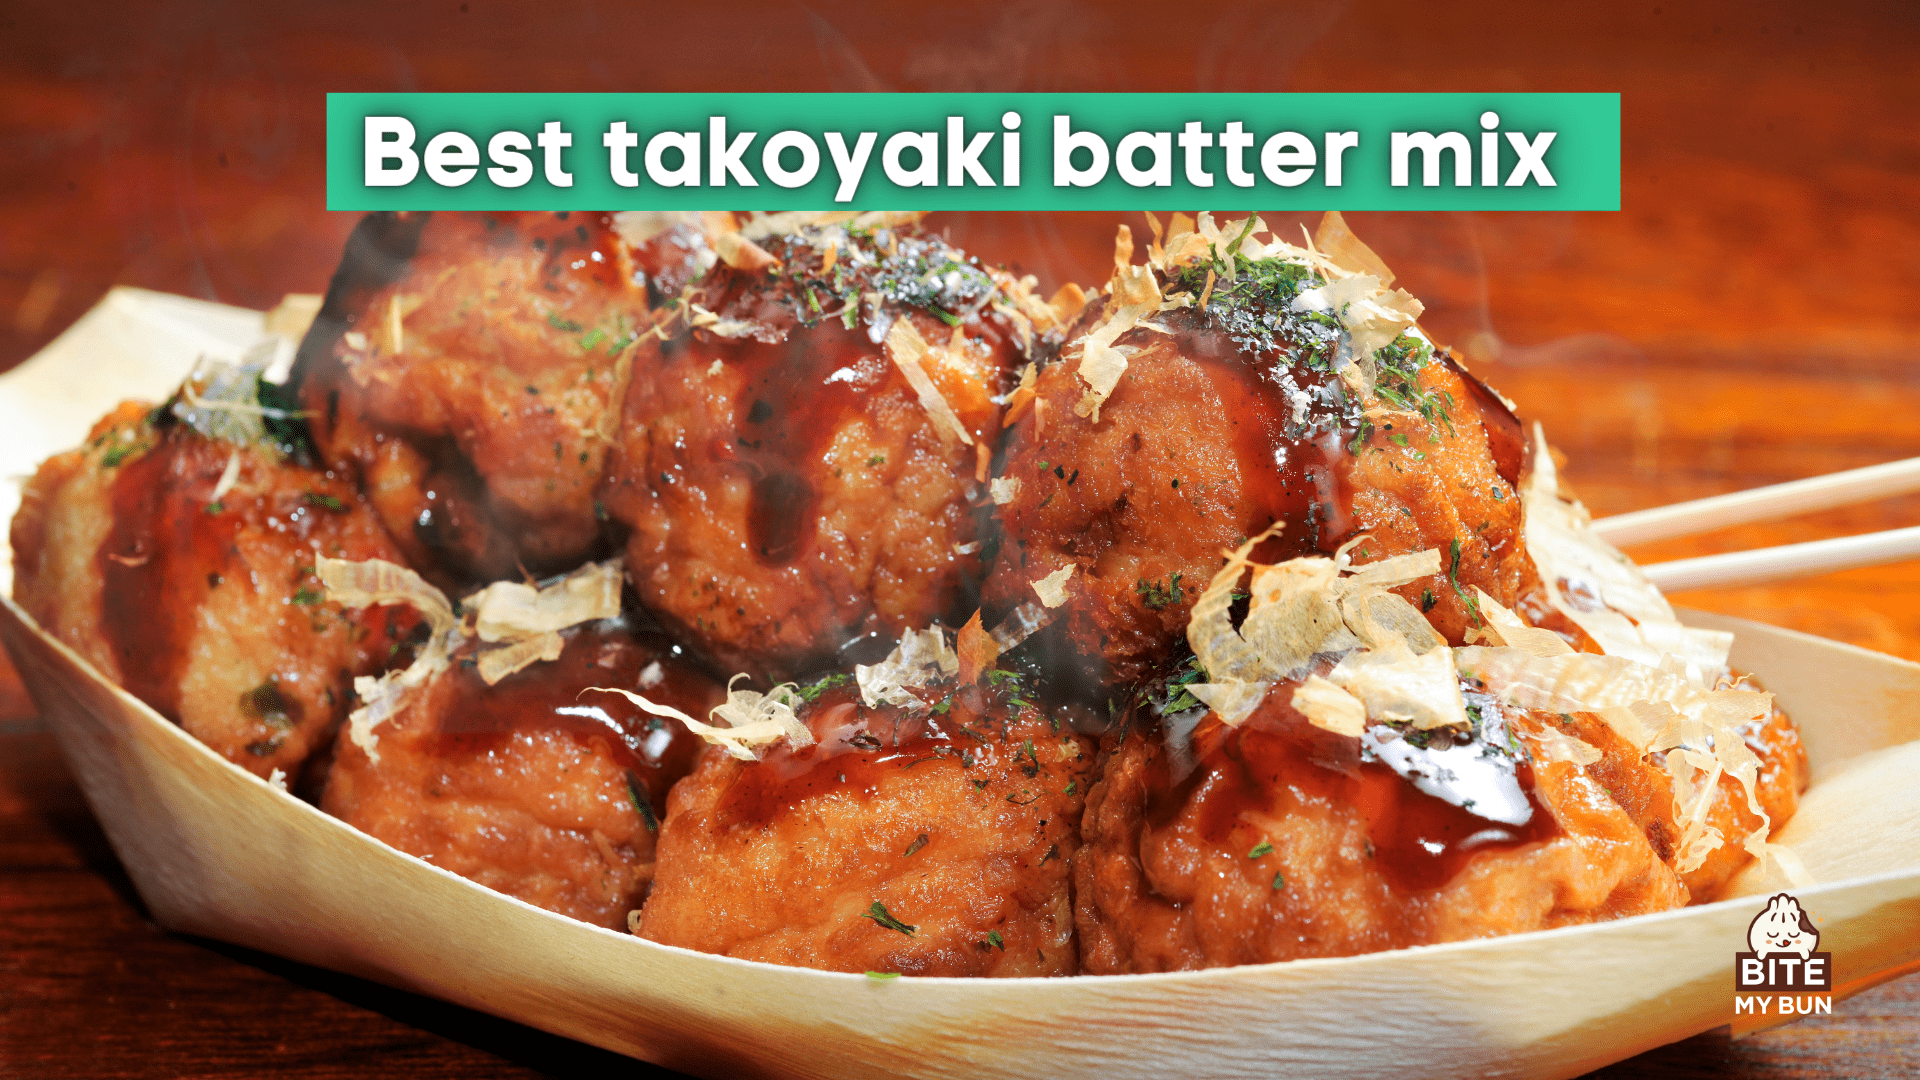 Bästa takoyaki-smetblandningen | Topp 4 att köpa + hur du gör din egen